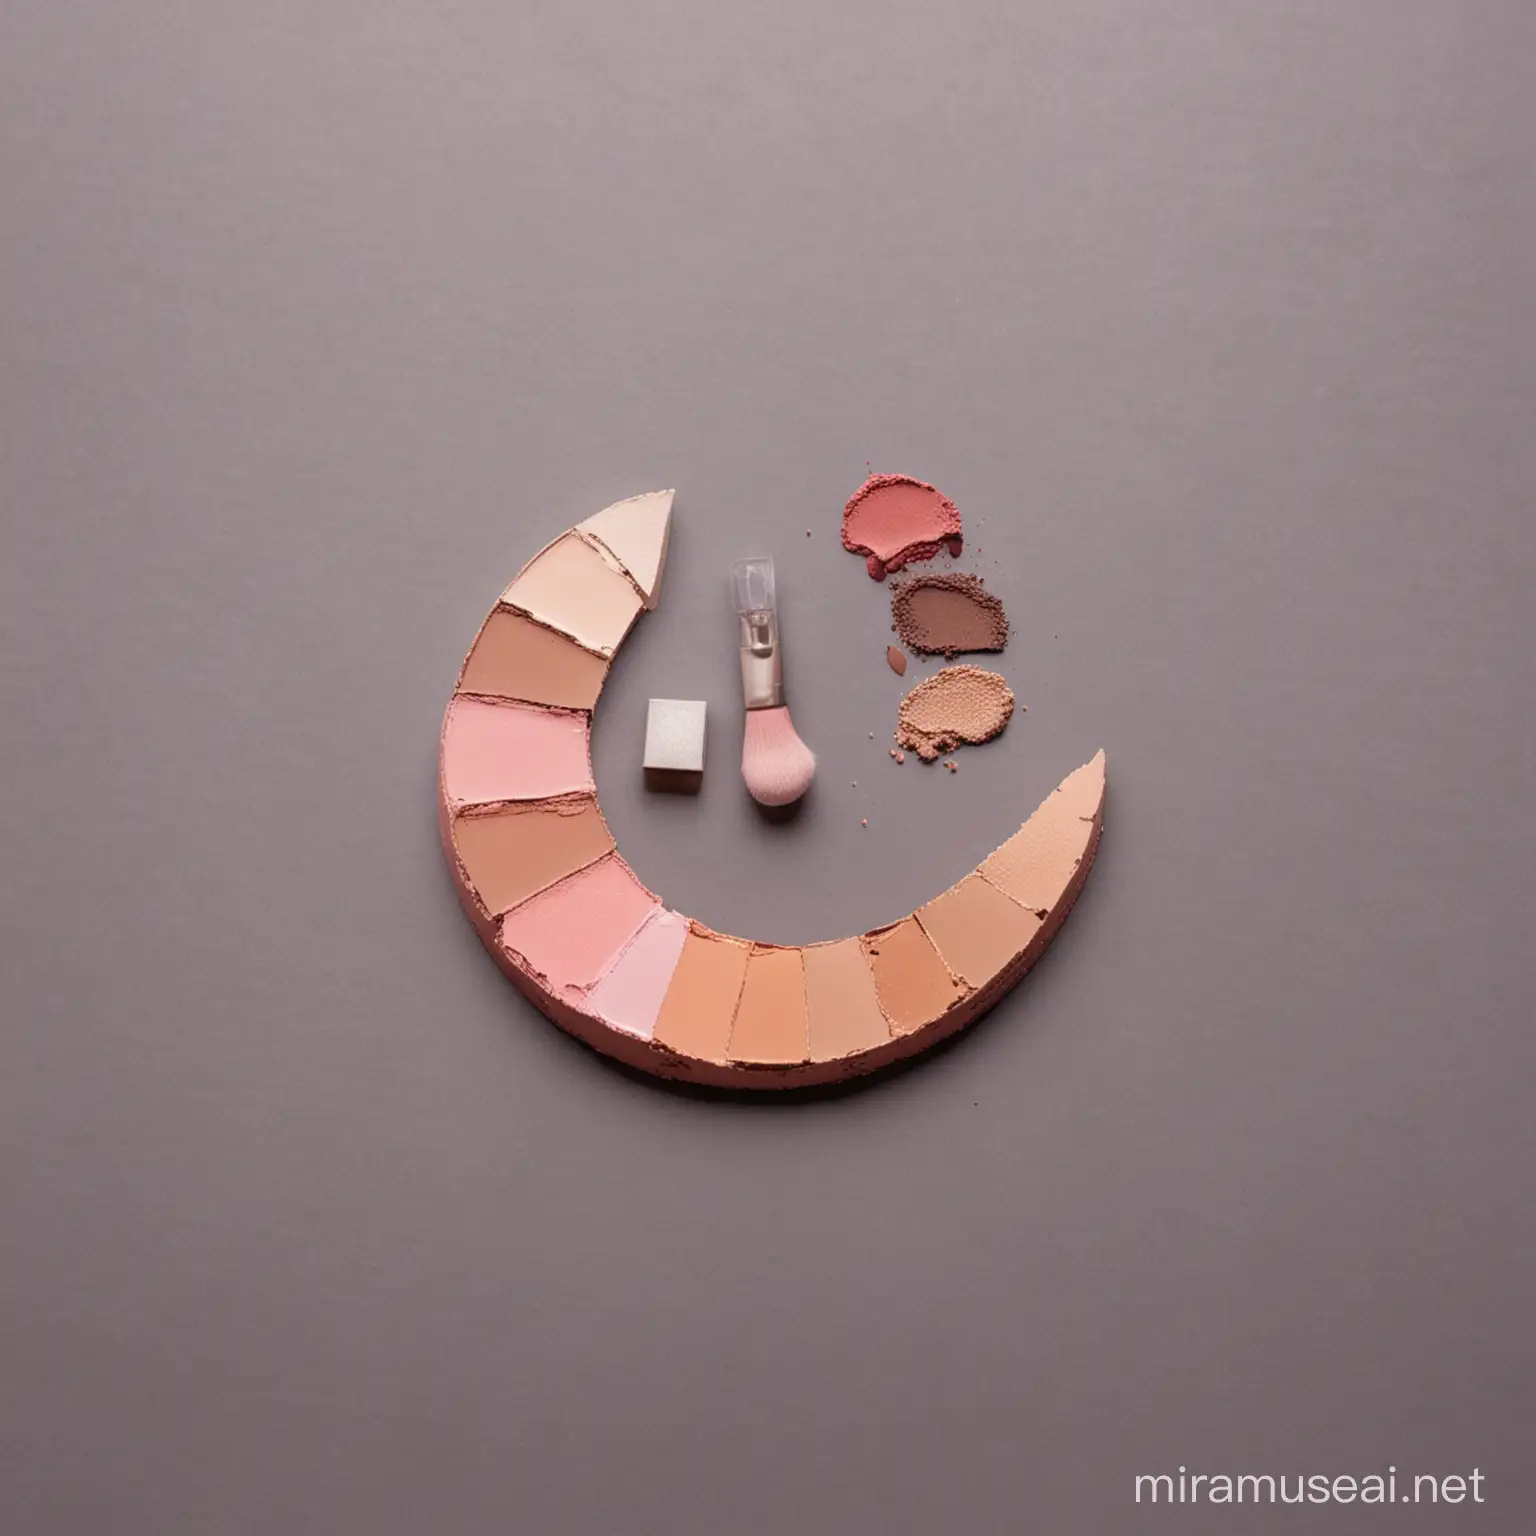 Half Moon Arrangement of Makeup Products Beauty Essentials Display